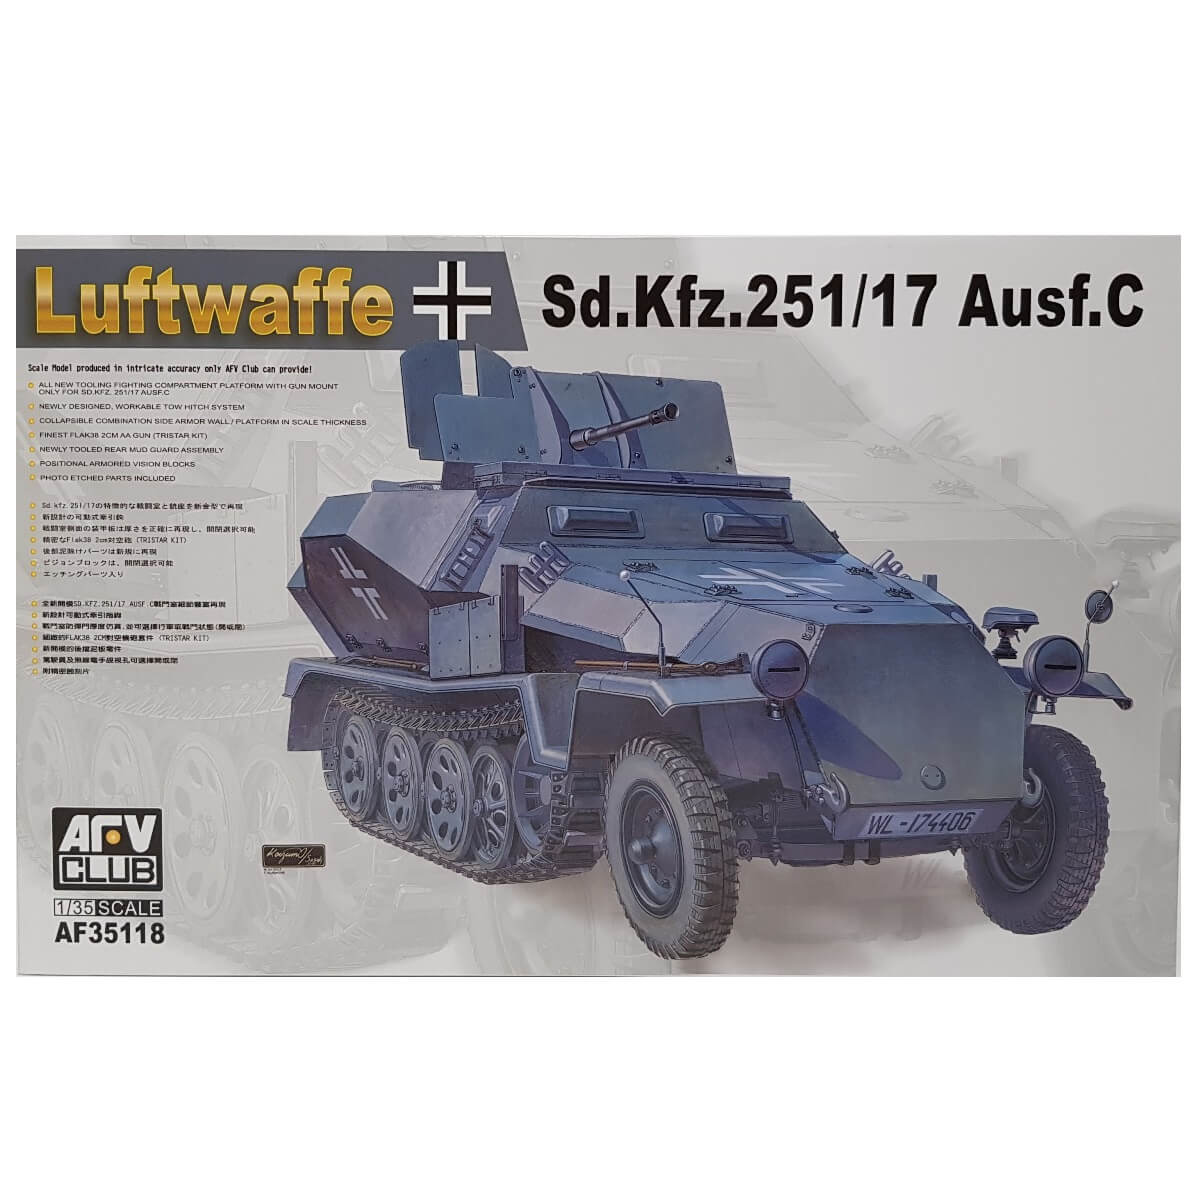 1:35 Luftwaffe Sd.Kfz. 251/17 Ausf. C - AFV CLUB